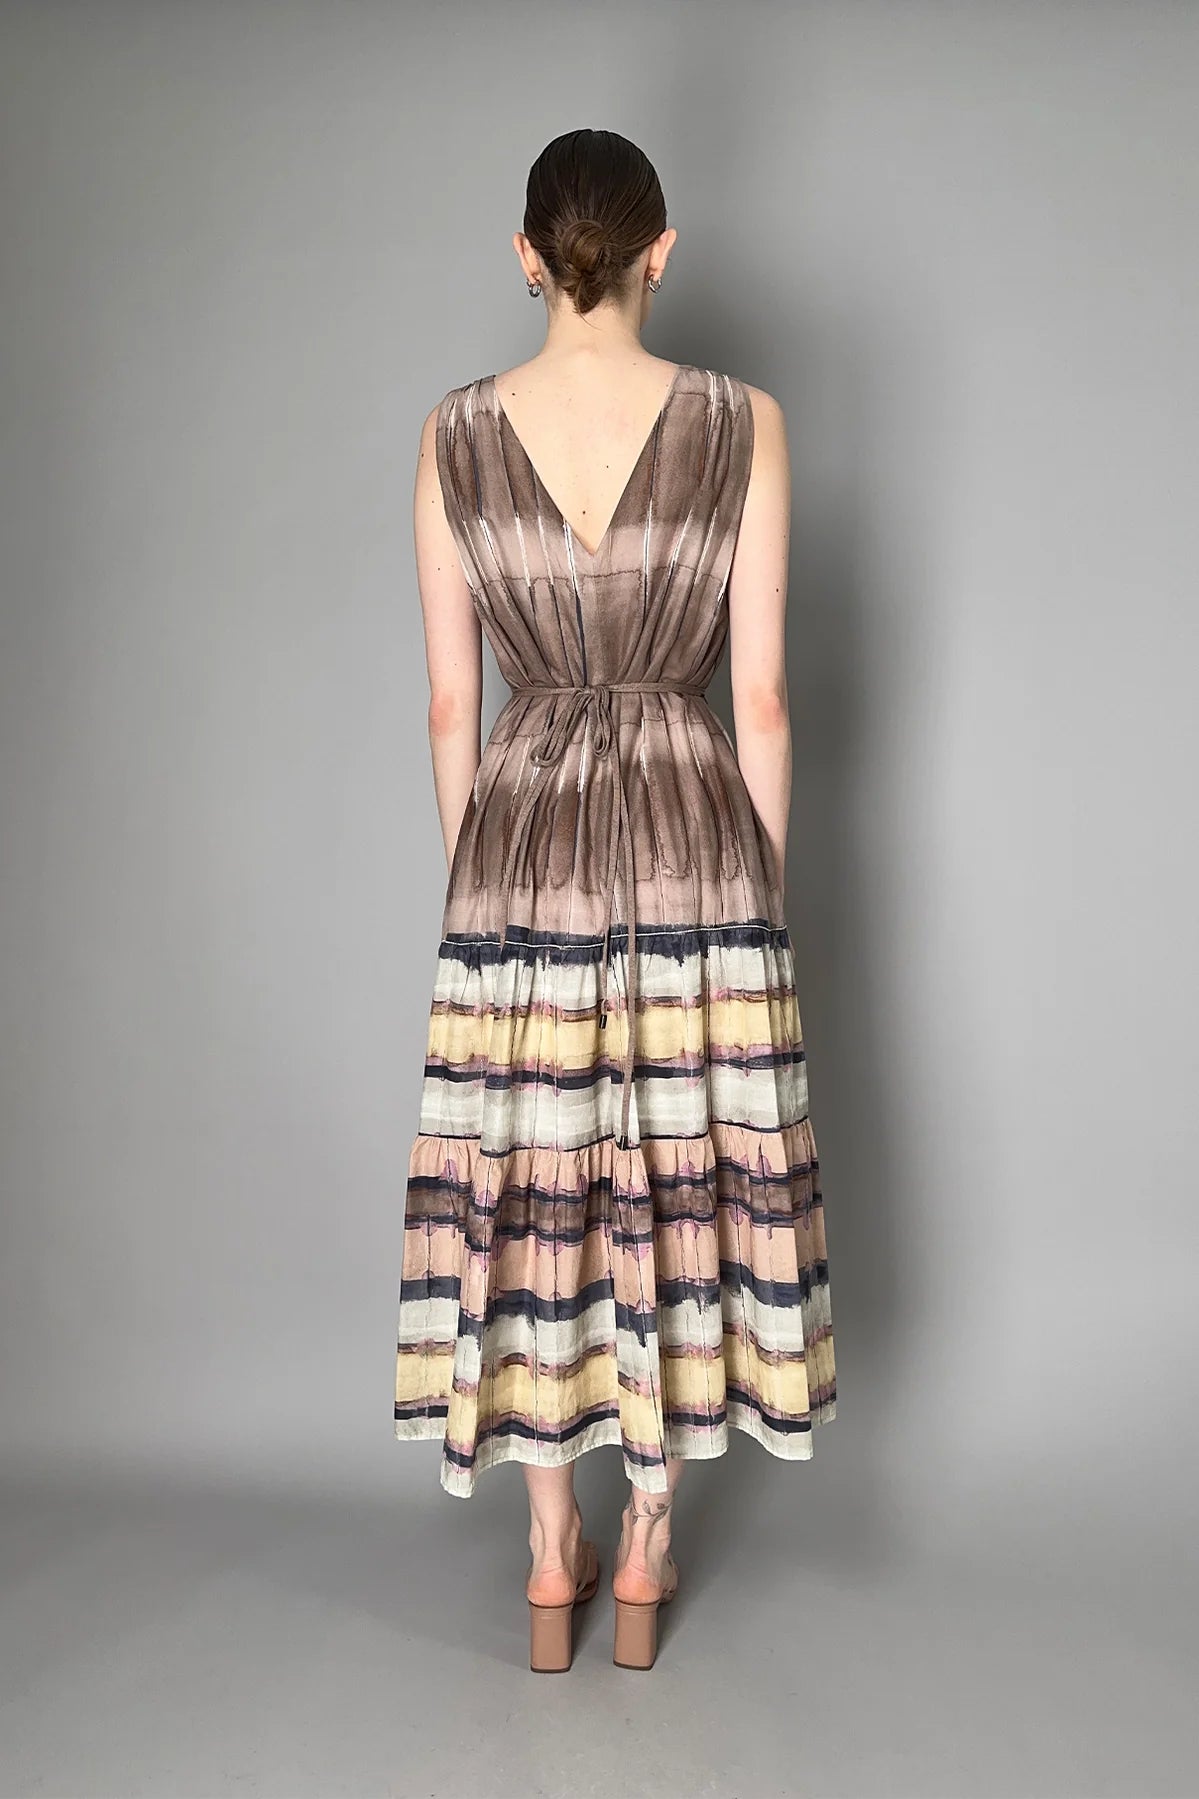 Long Watercolor Dress in Sepia